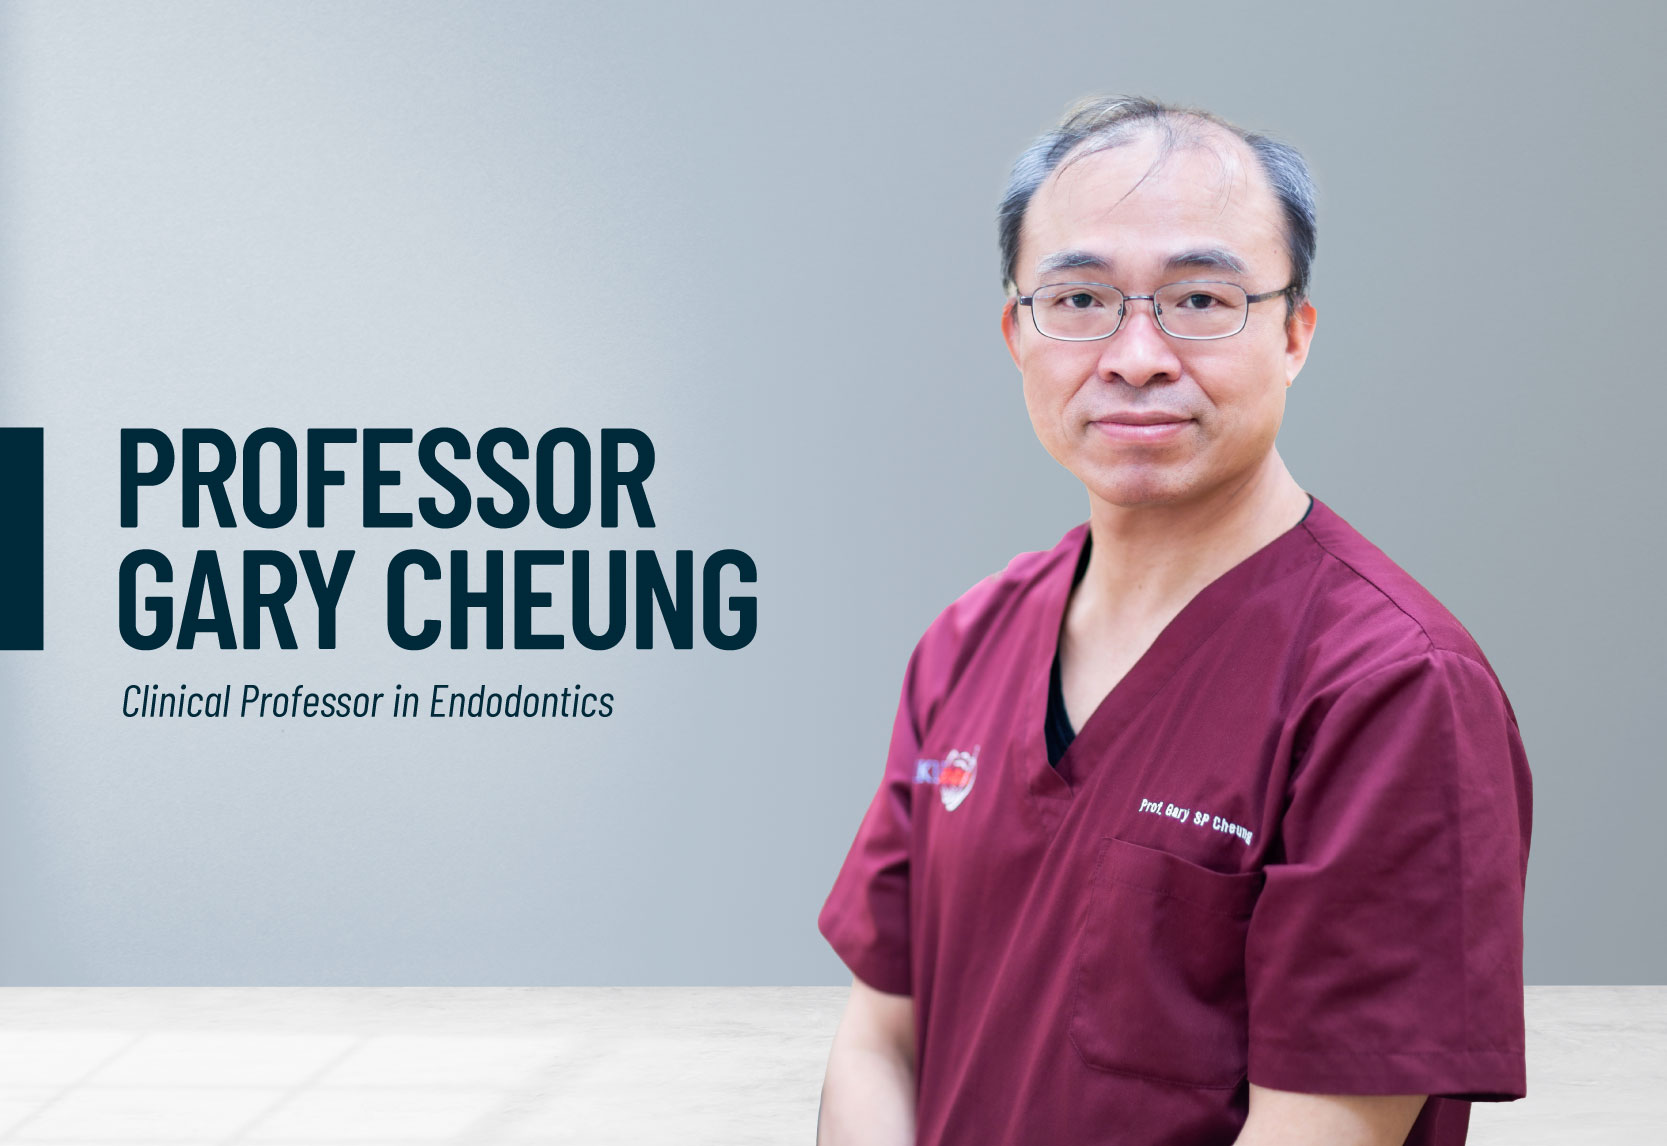 Professor Gary Cheung